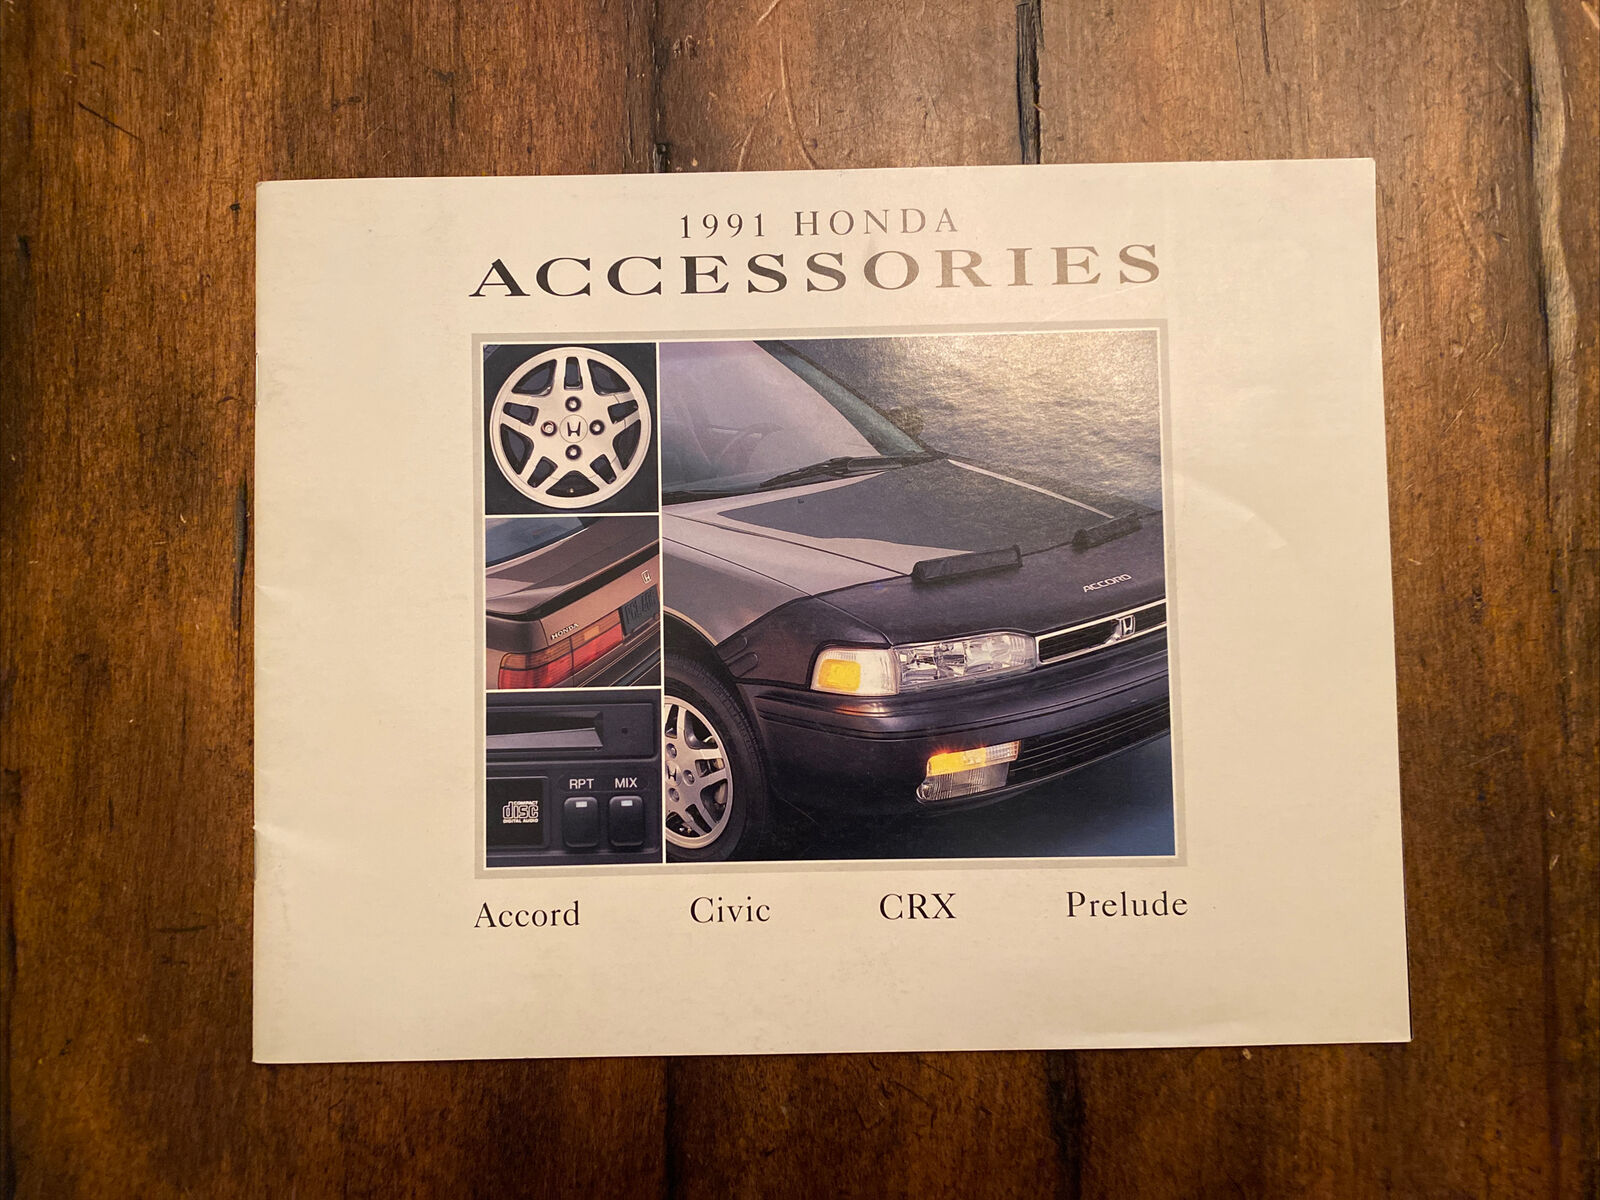 Original 1991 Honda Accessories brochure